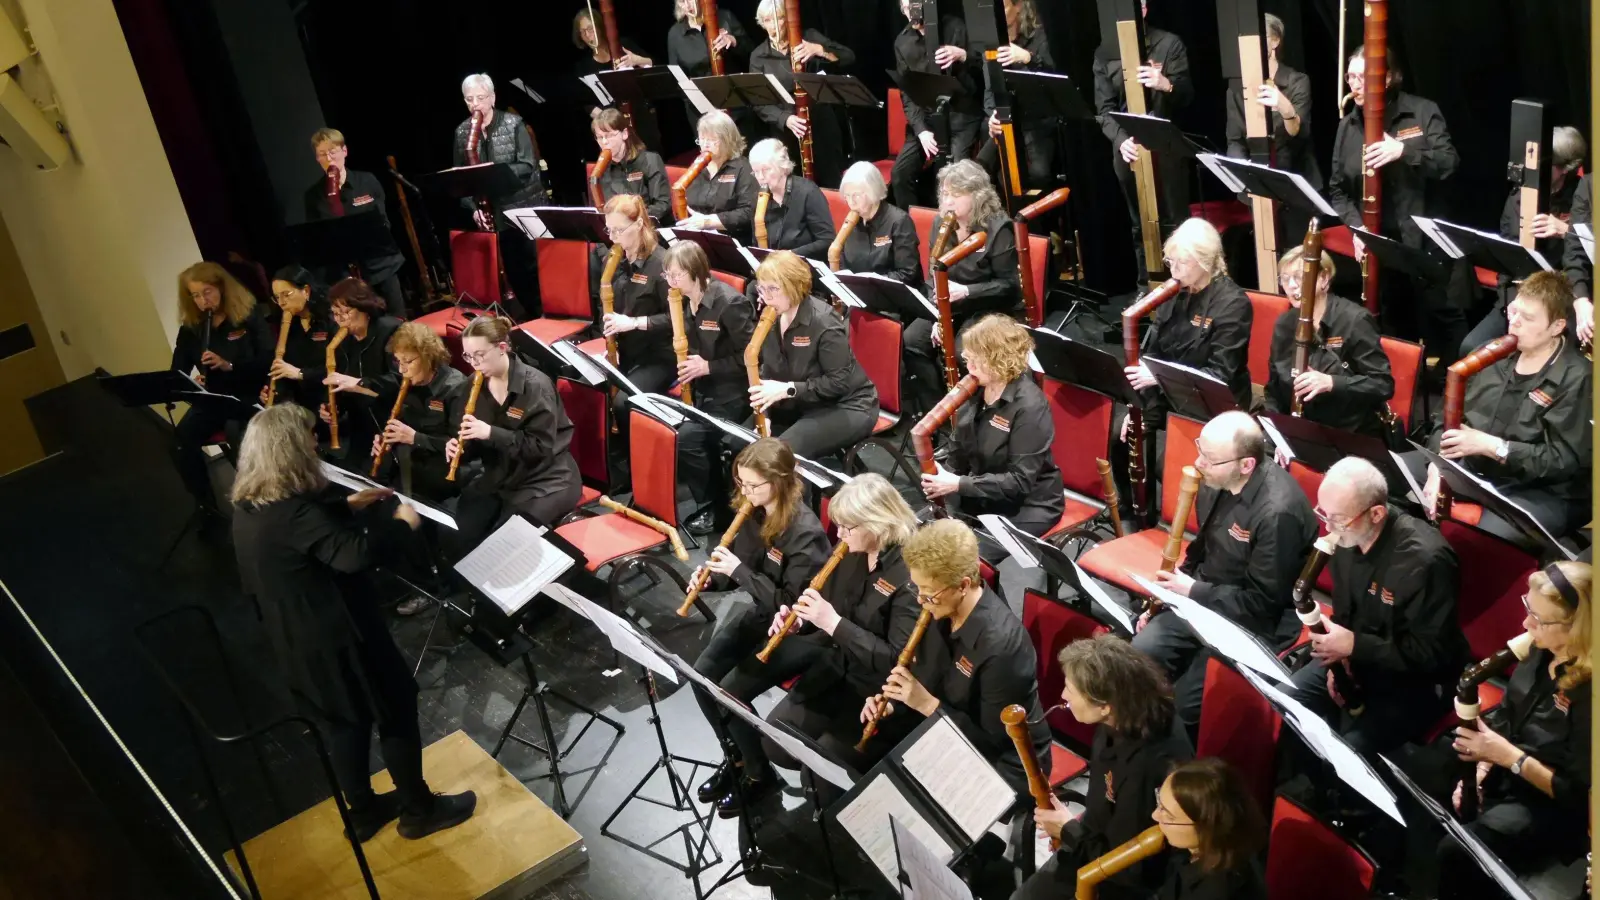 Flötentöne aus über 60 Instrumenten hörten die musikbegeisterten Zuhörer beim flautississimo-Konzert in der NeuStadtHalle – ein akustisches Erlebnis der besonderen Art. (Foto: Rüdiger Pfeiffer)